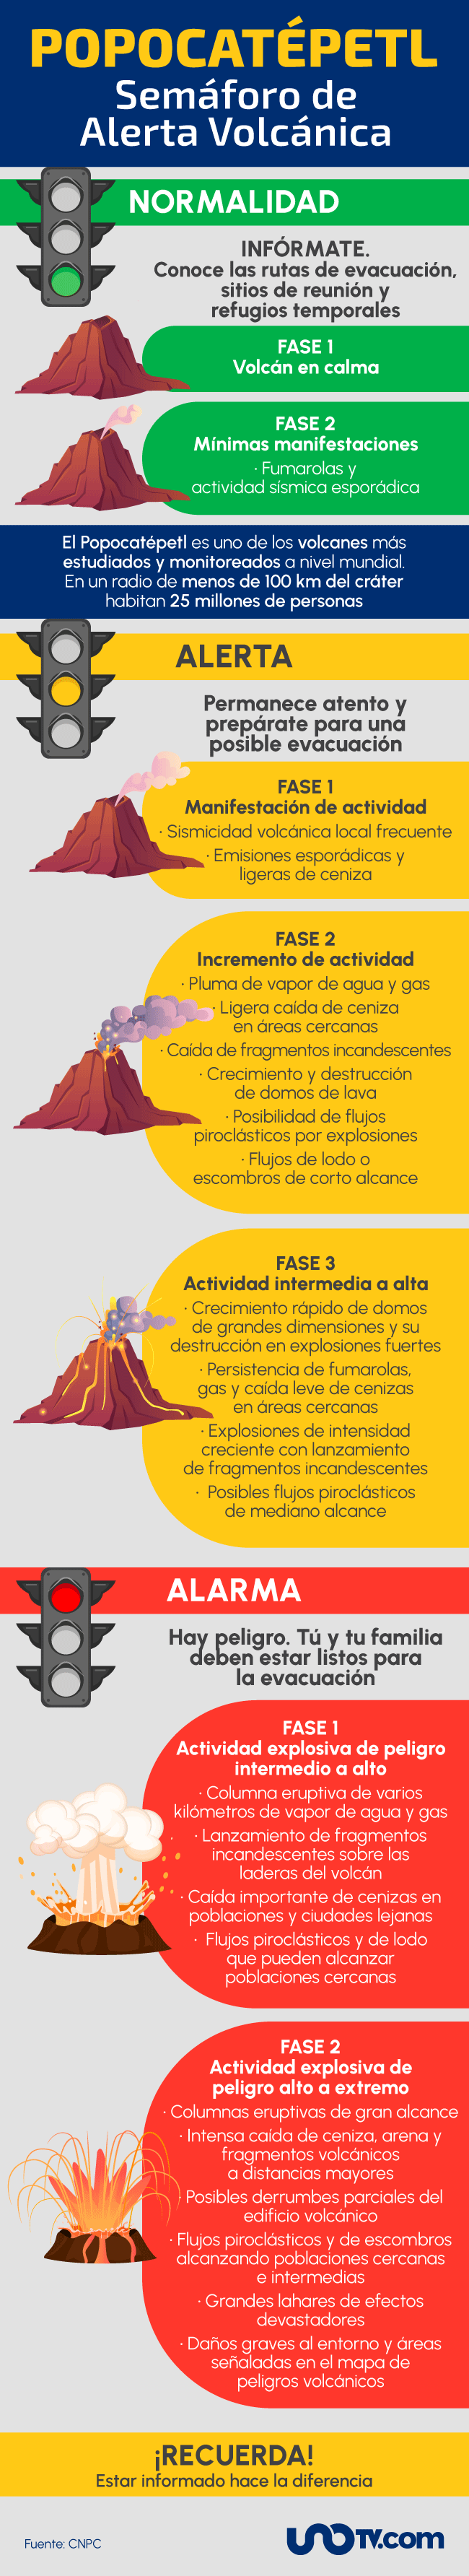 semáforo de alerta volcánica del Popocatépetl